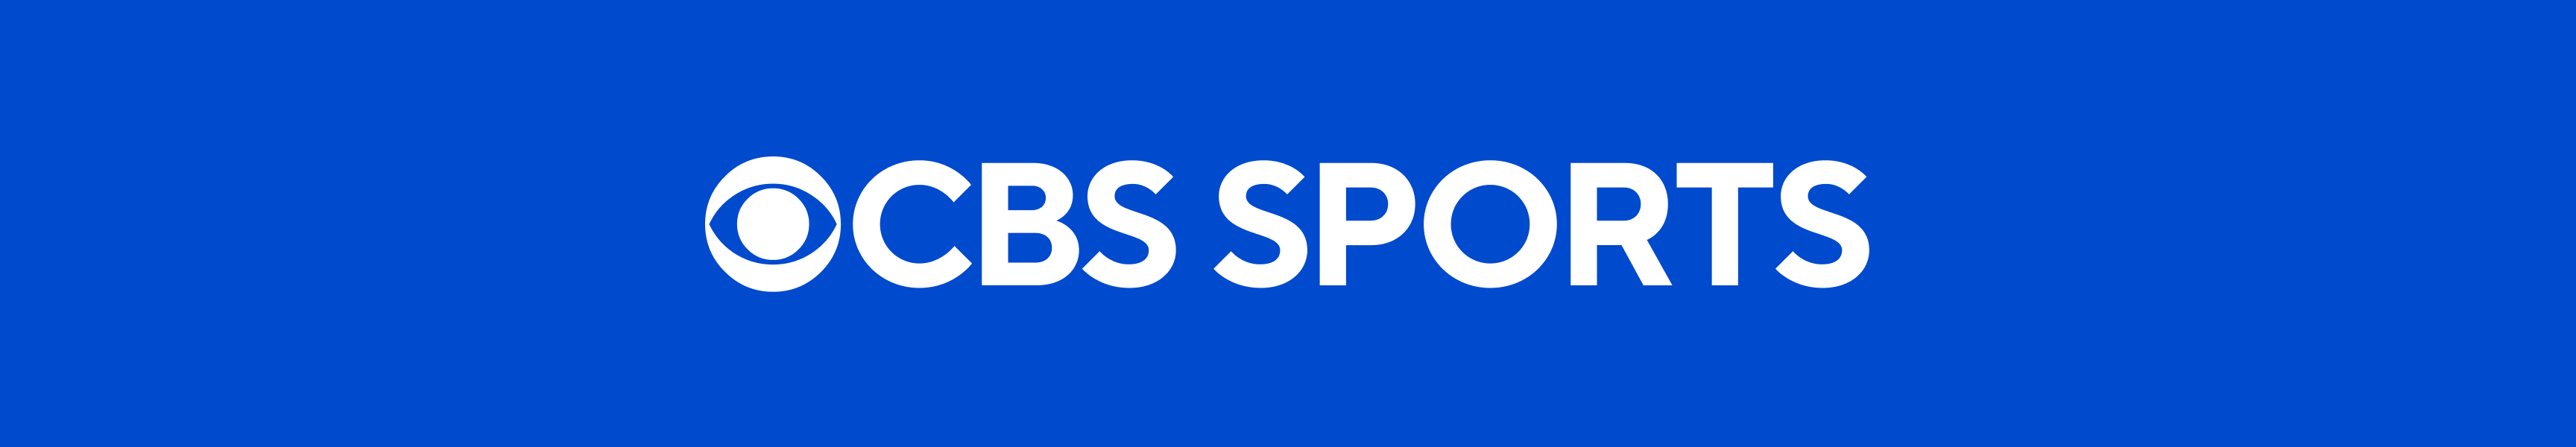 CBS Sports Kleidung